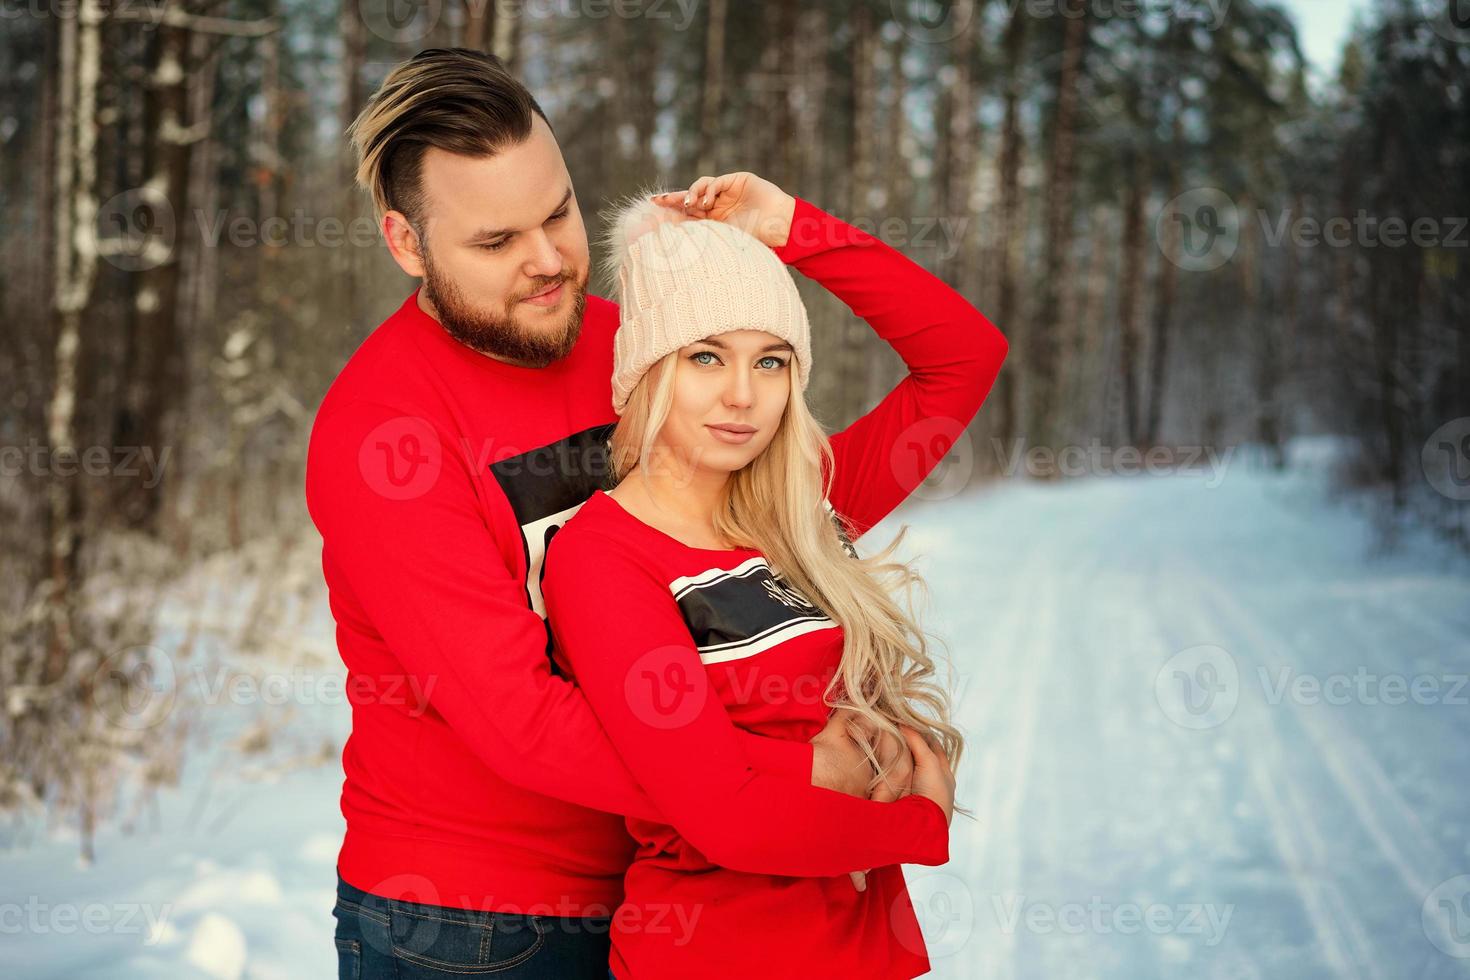 vackert ungt par på vintern i skogen, kram, glad romans foto